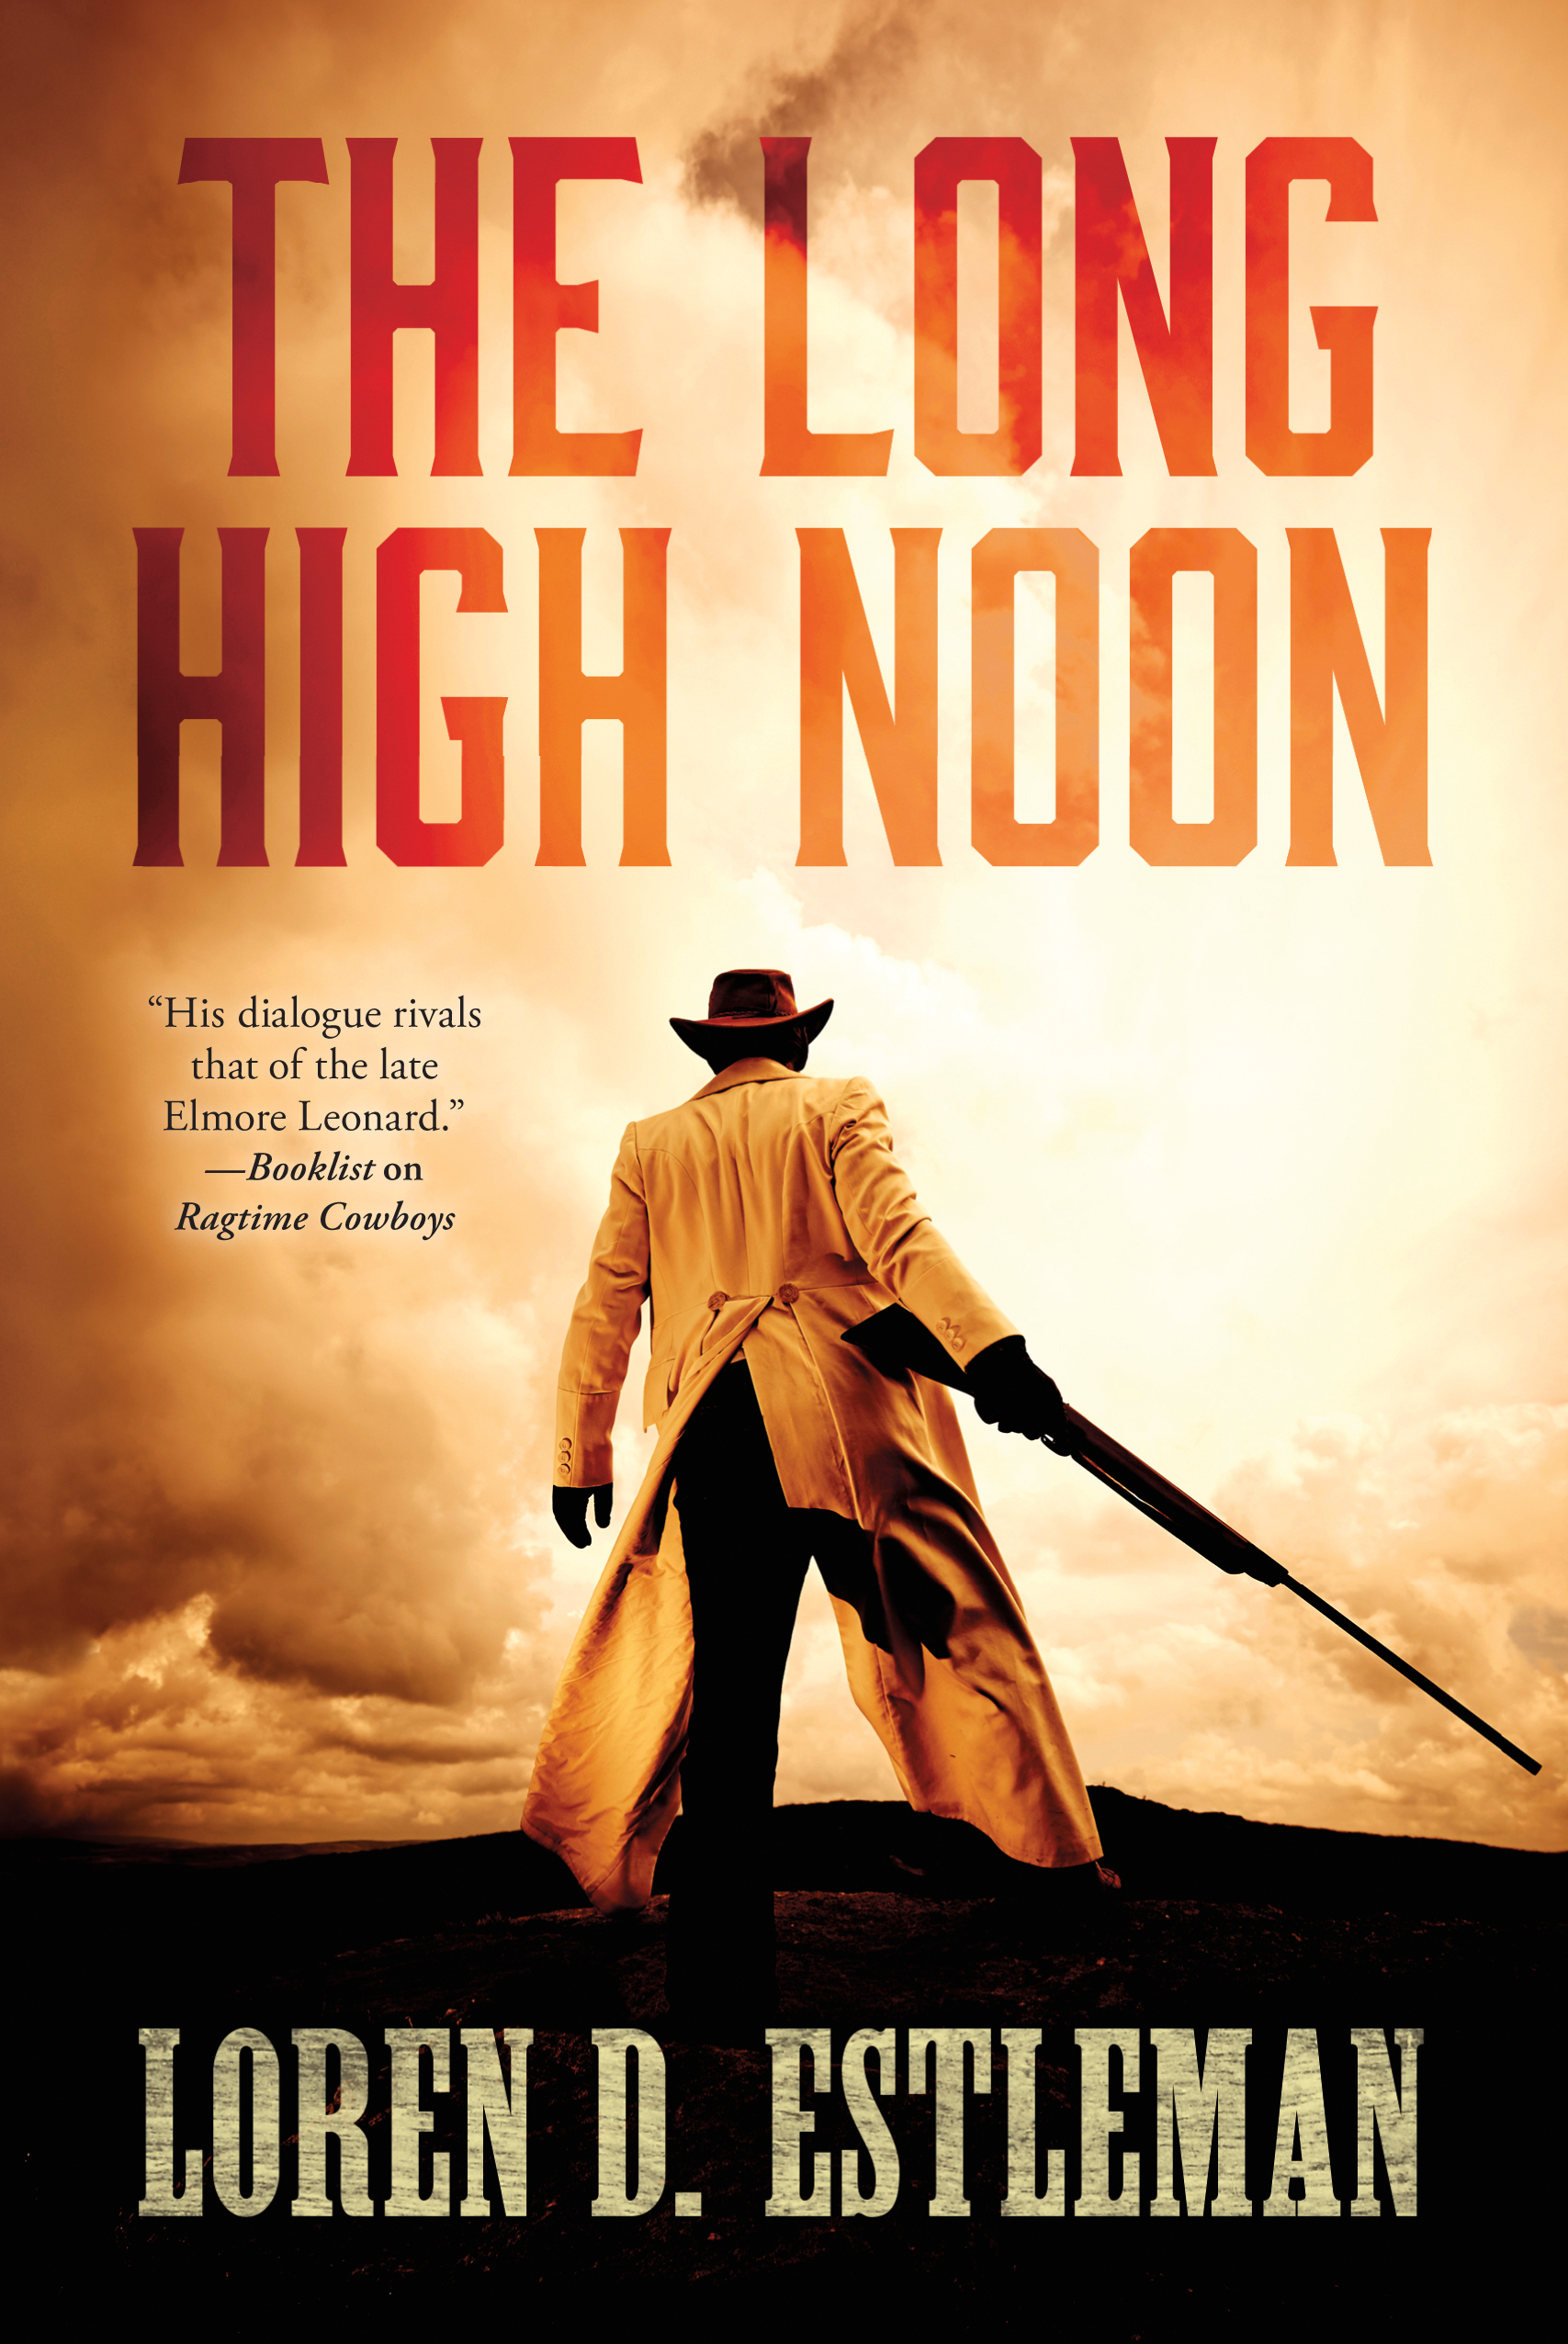 The Long High Noon by Loren D. Estleman